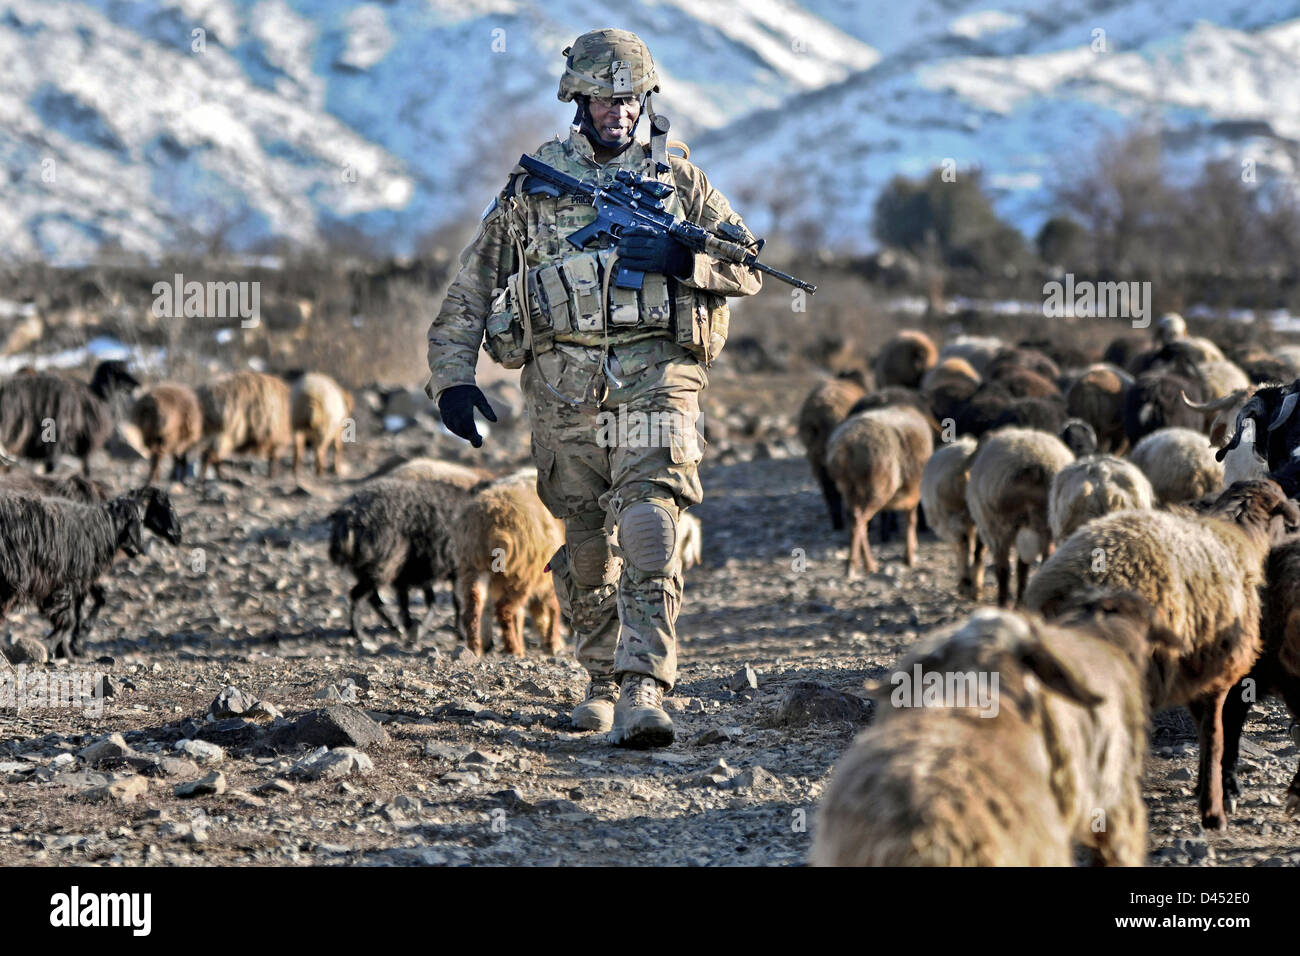 Un soldado del ejército estadounidense patrullas a través de un rebaño de ovejas y cabras pastando fuera una aldea de Febrero 10, 2012 Narizah, Afganistán. Foto de stock